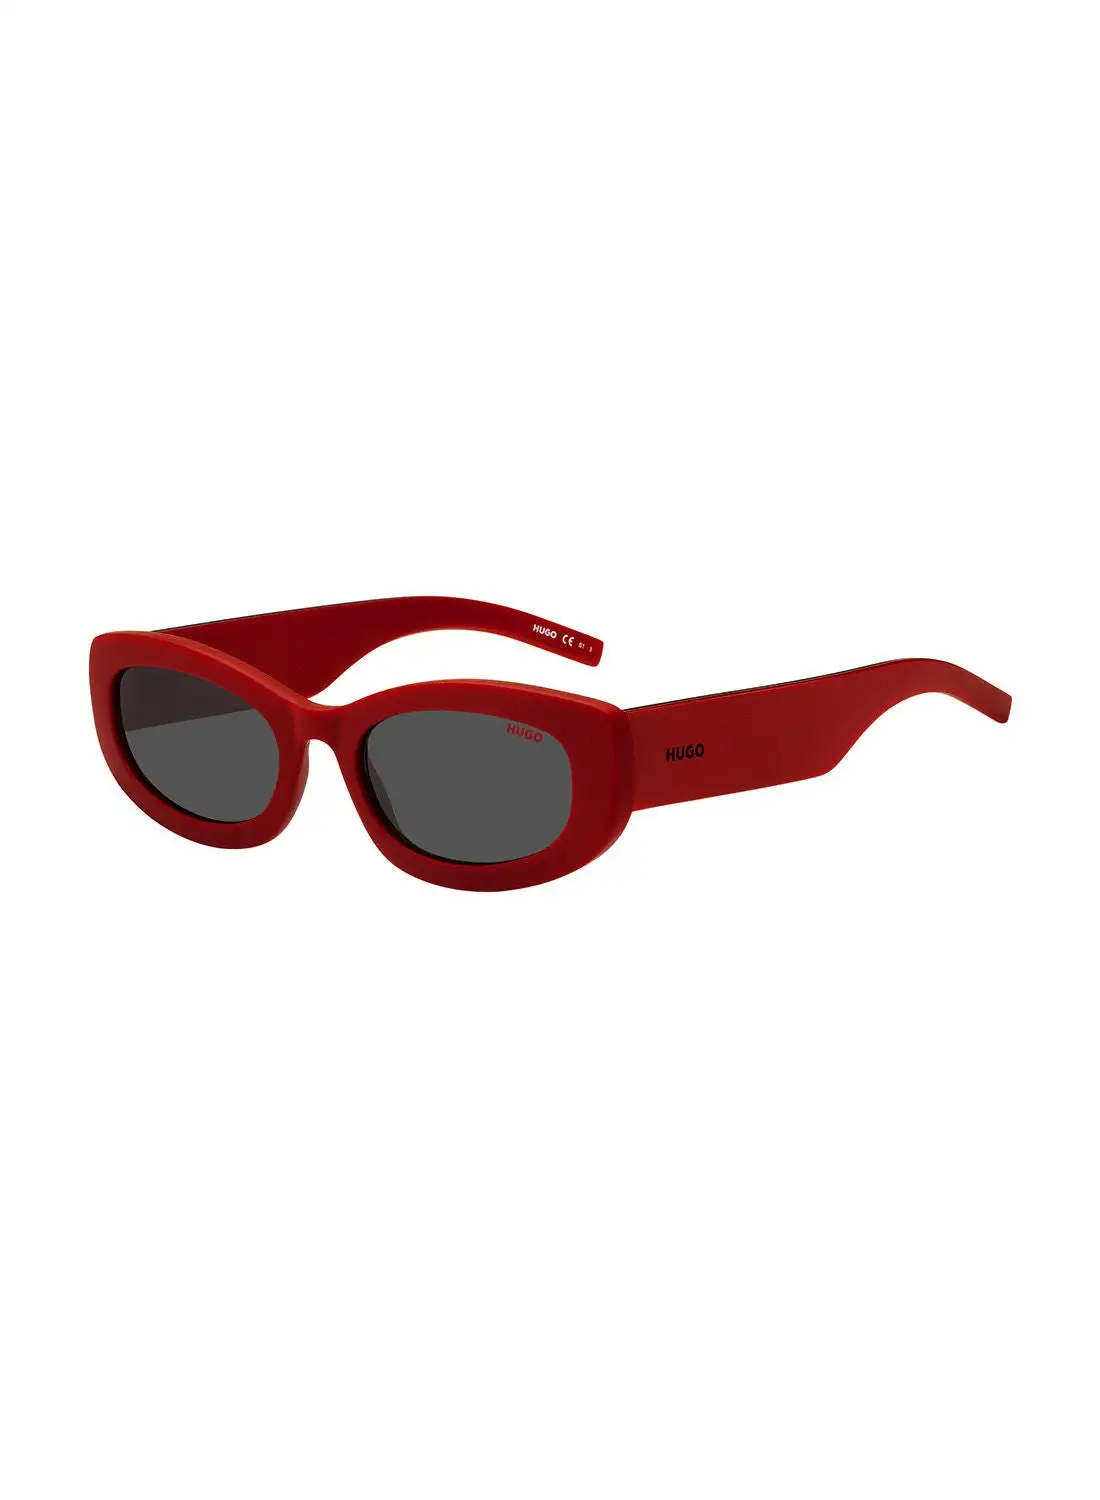 HUGO Women's UV Protection Rectangular Sunglasses - Hg 1253/S Red 54 - Lens Size: 54 Mm